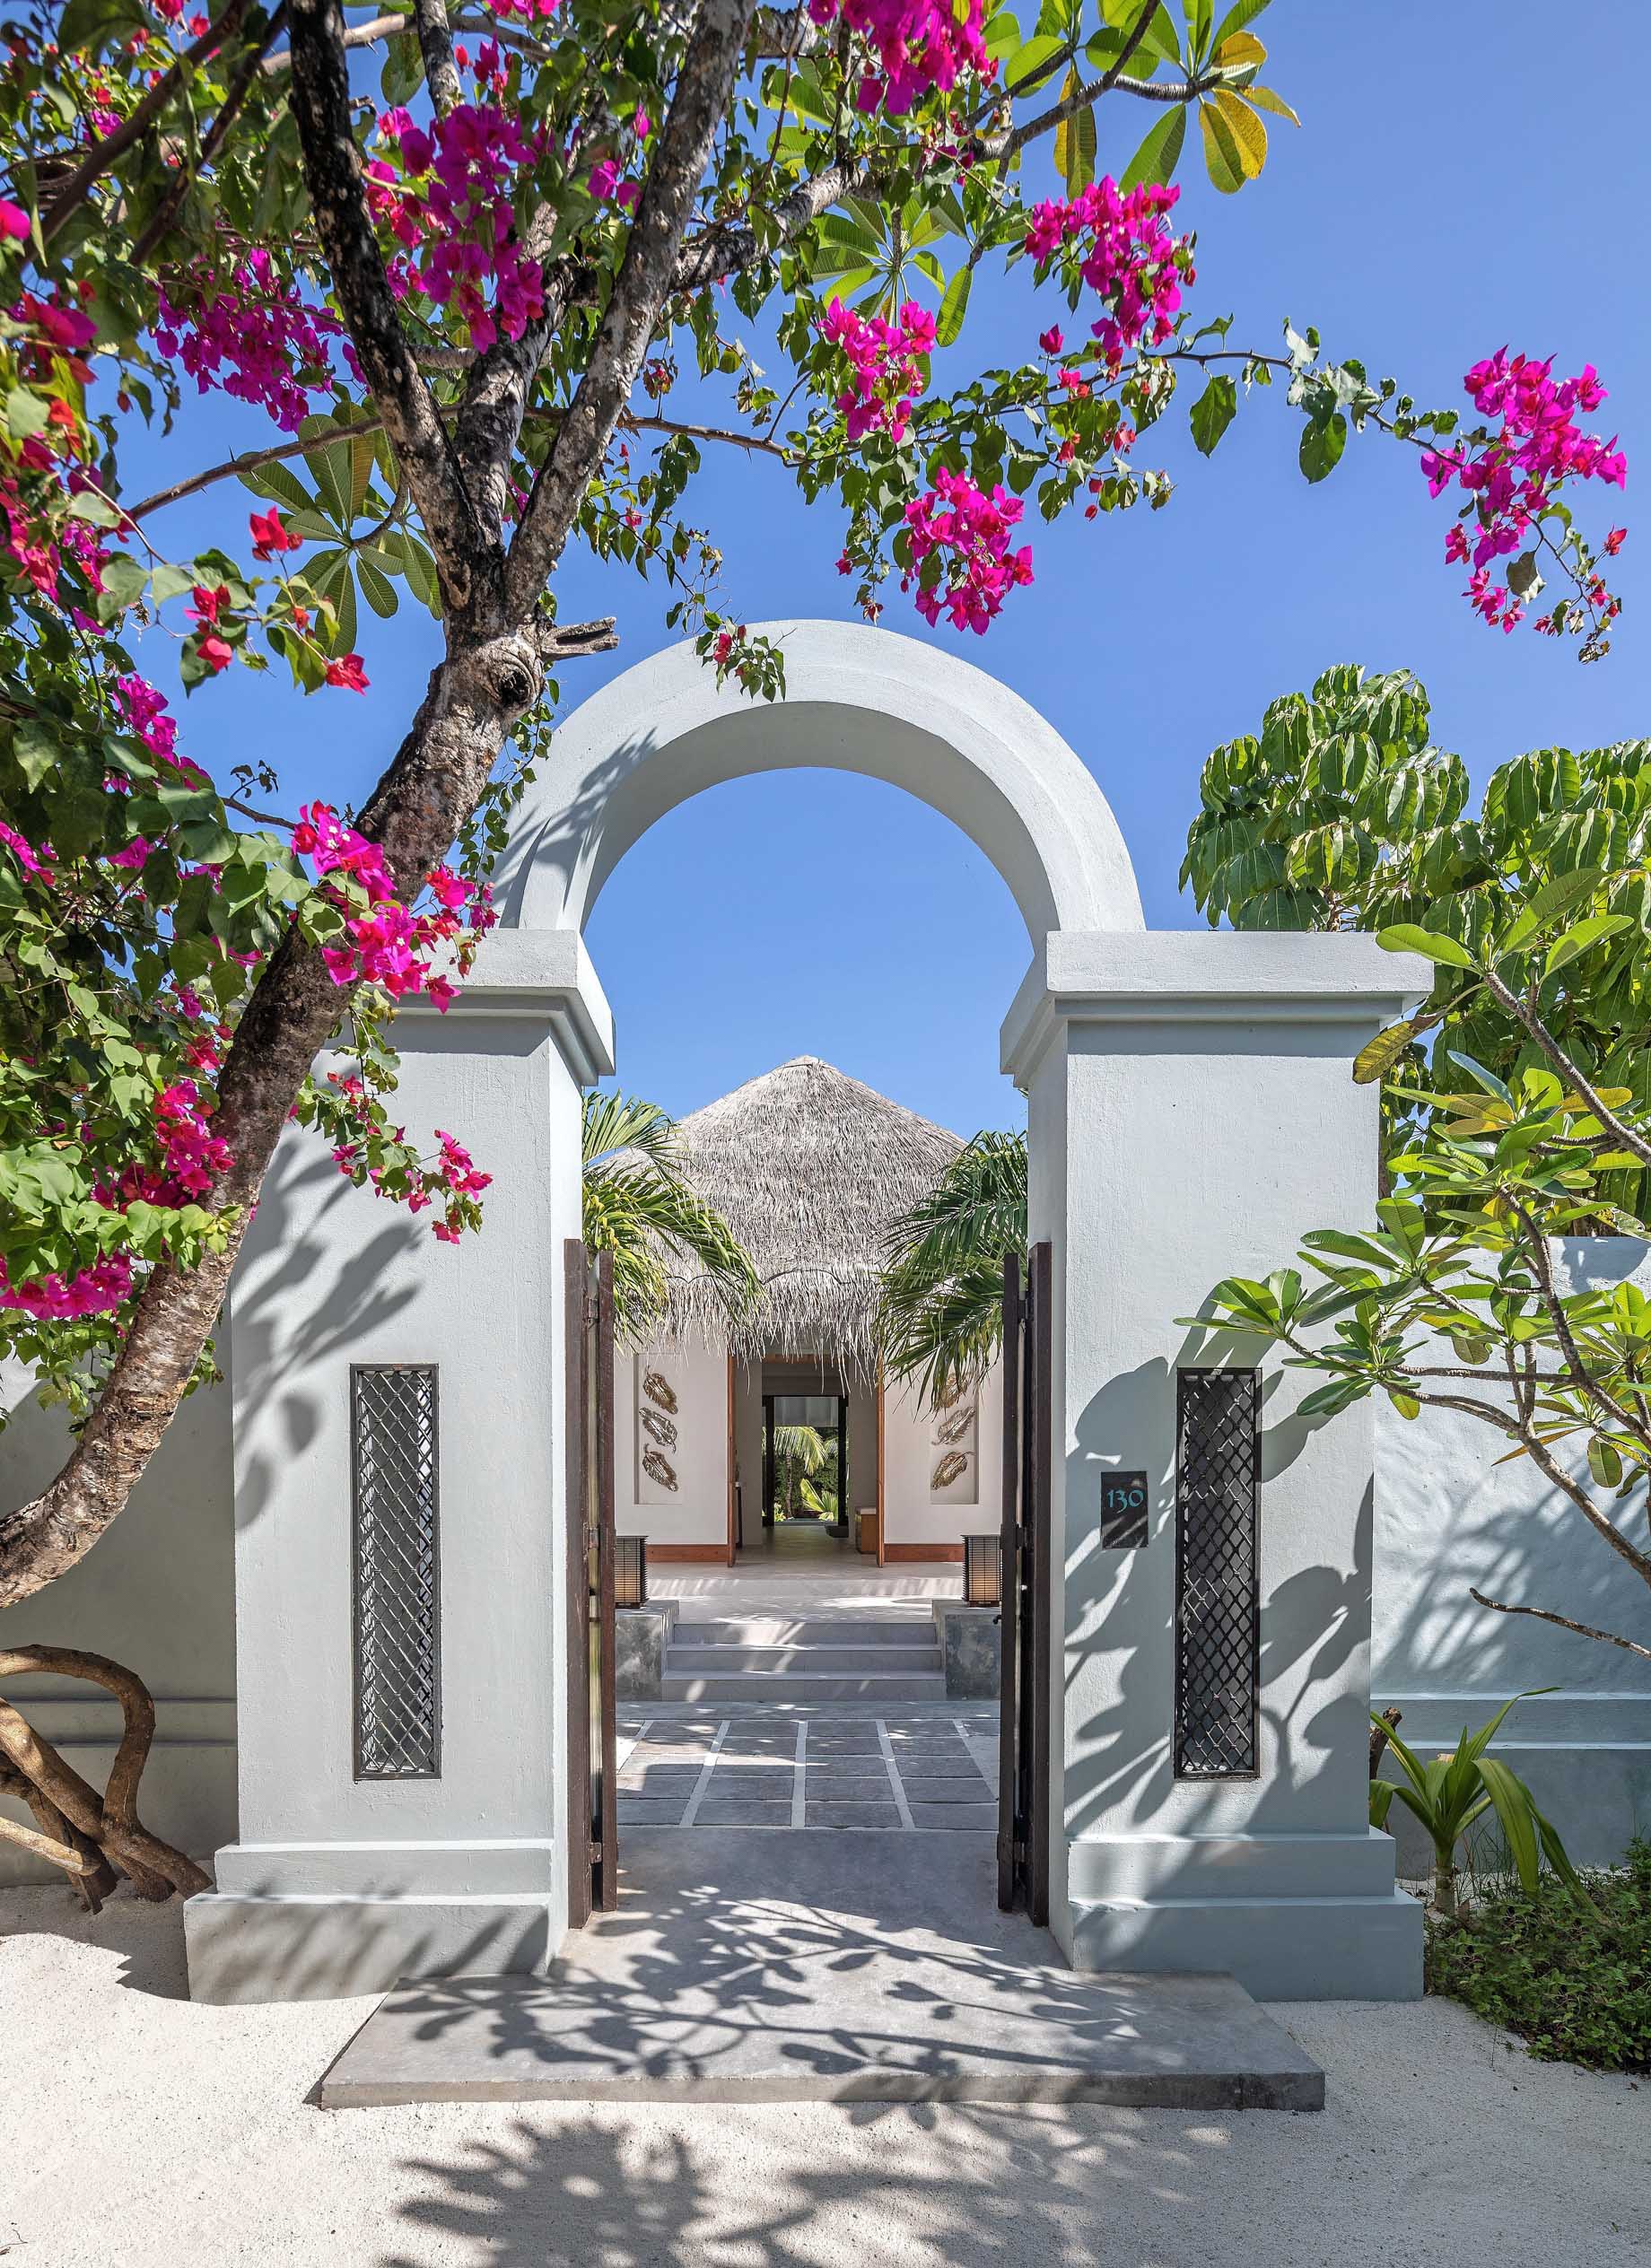 Anantara Kihavah Maldives Villas Resort – Baa Atoll, Maldives – Beach Pool Residence Entrance Gate